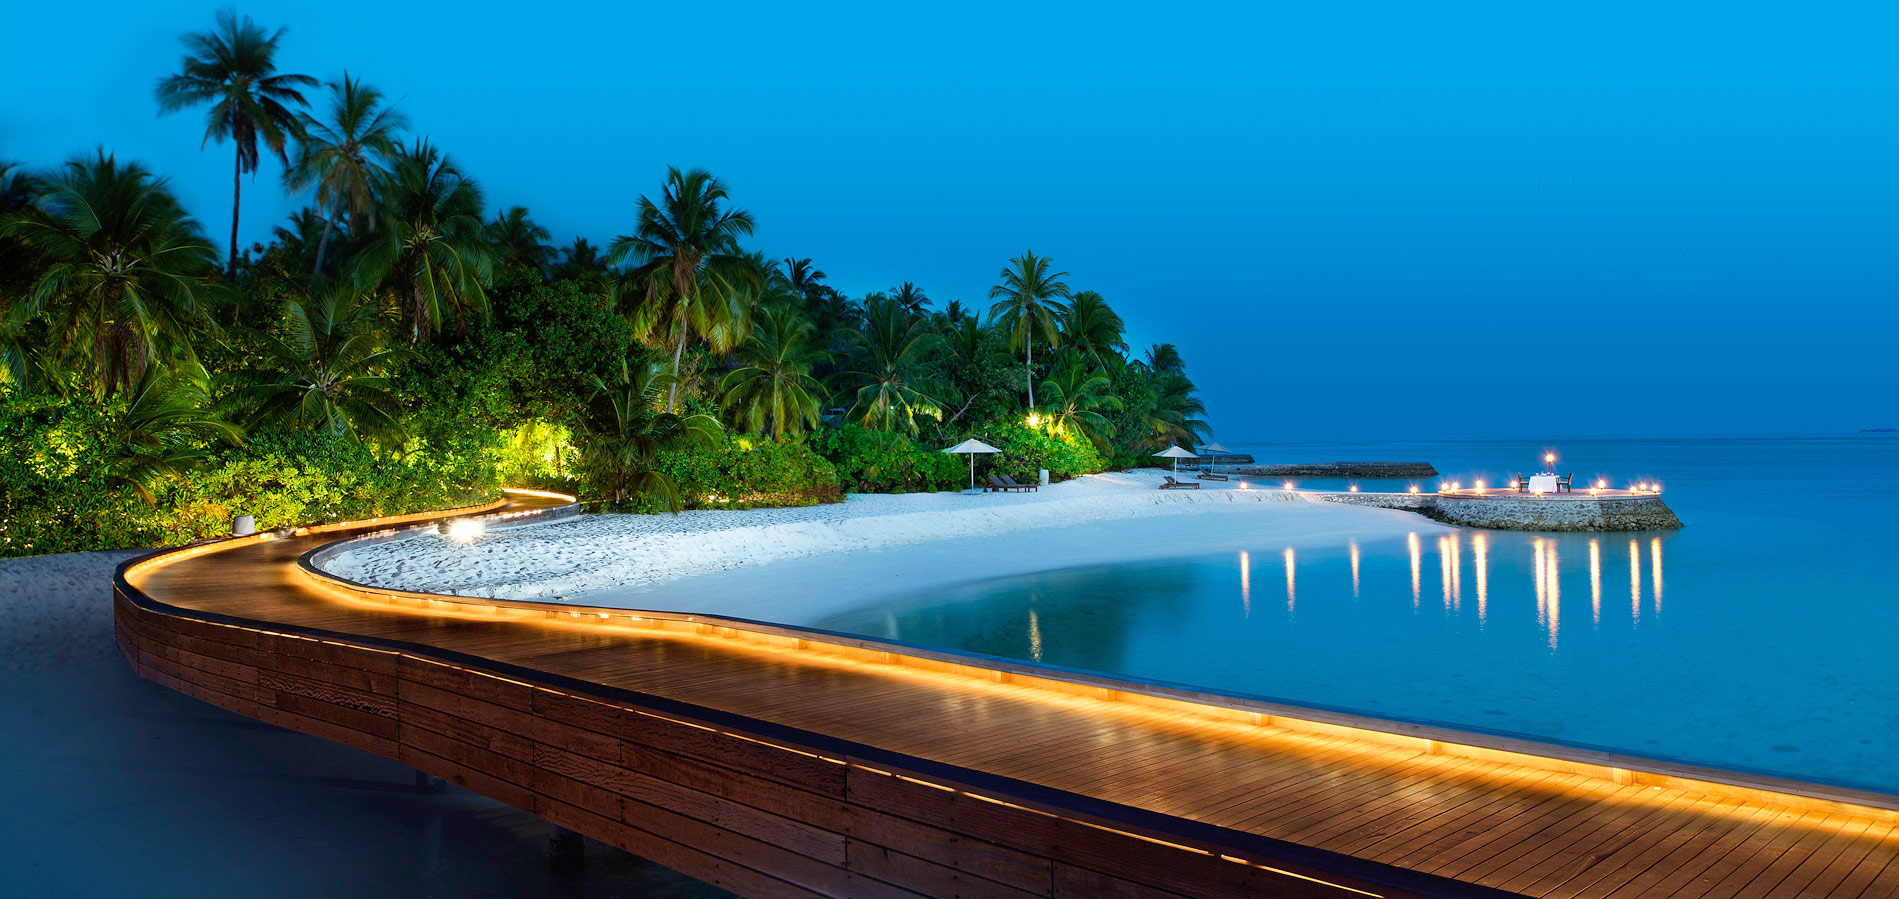 【携程攻略】马尔代夫卡尼岛景点,刚从卡尼岛回来，太漂亮了，订的是高级房，离海边只有20米，很安静。…